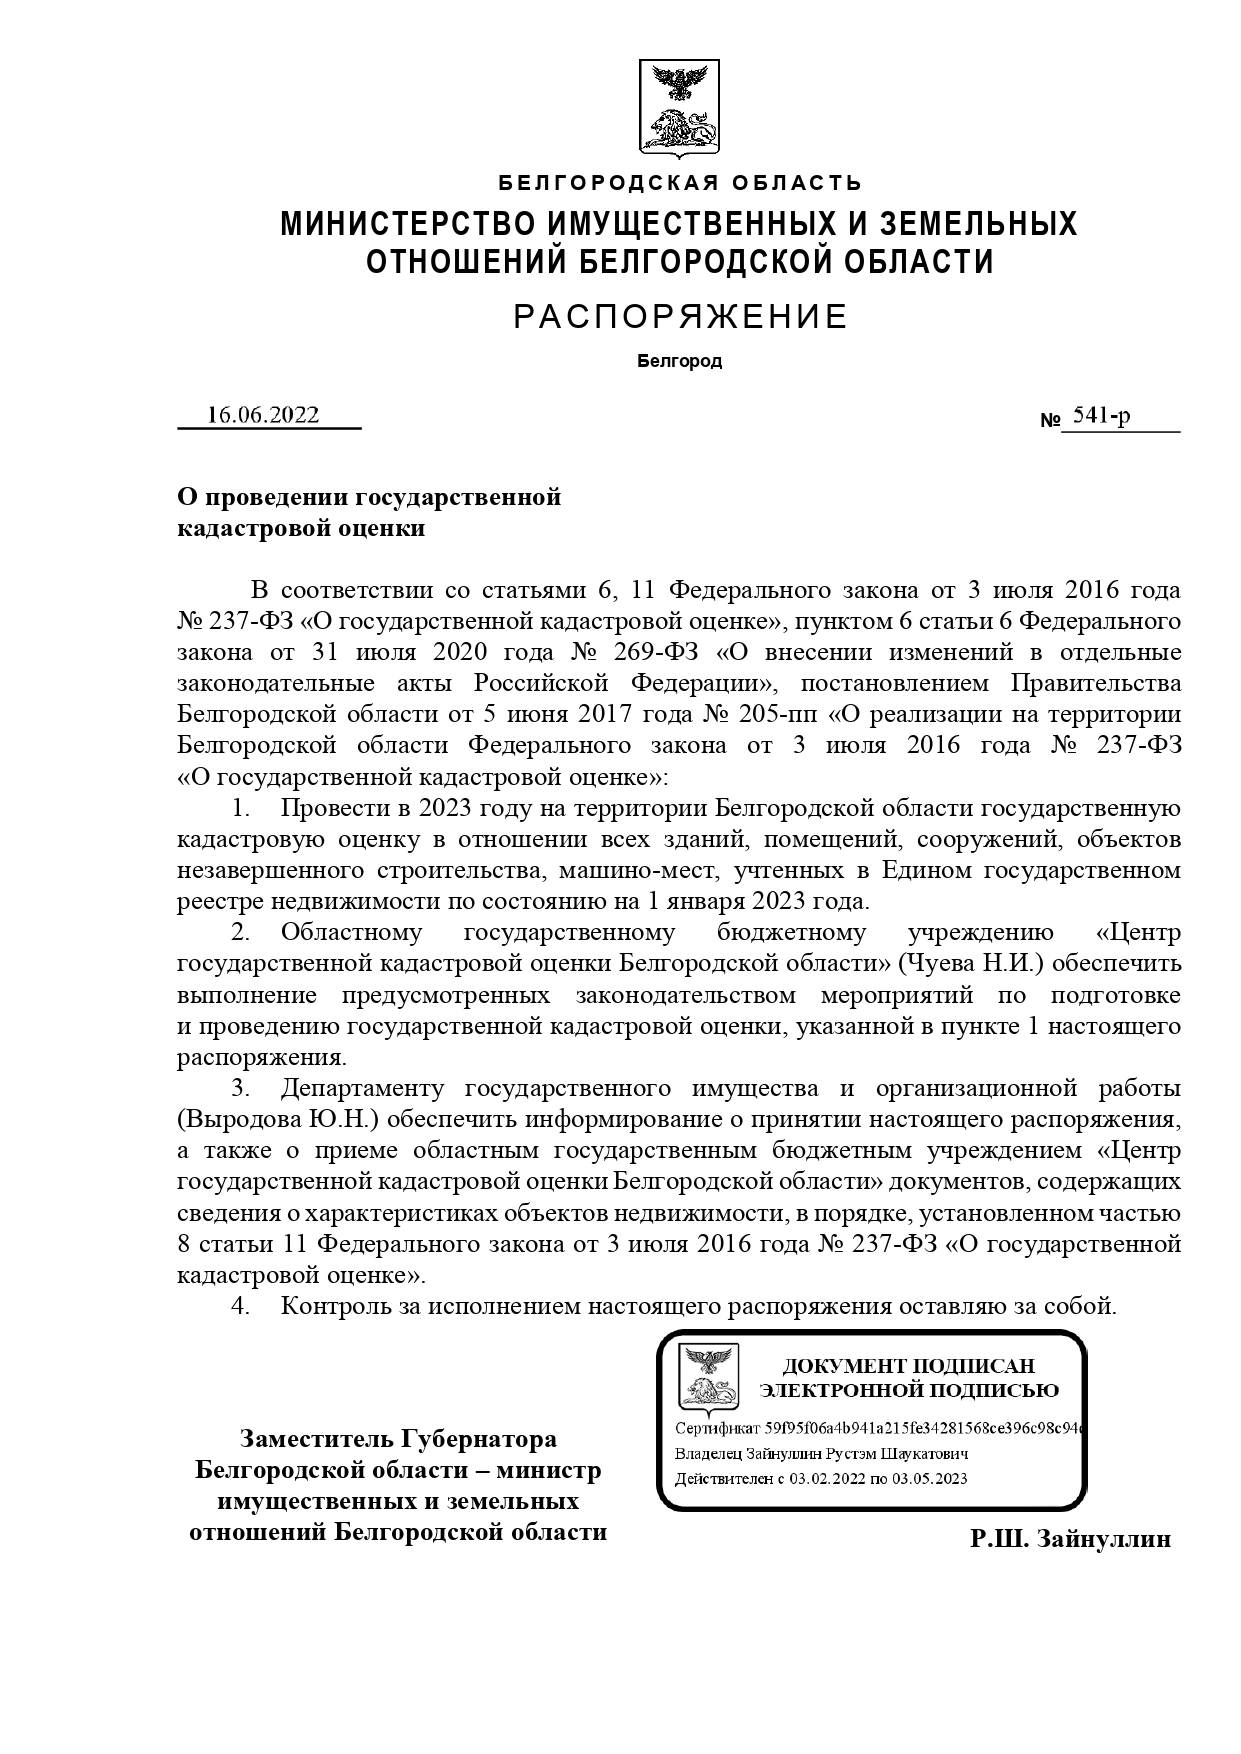 Распоряжение Министерства имущественных и земельных отношений Белгородской области от 16.06.2022 года №541-р &quot;О проведении государственной кадастровой оценки&quot;.